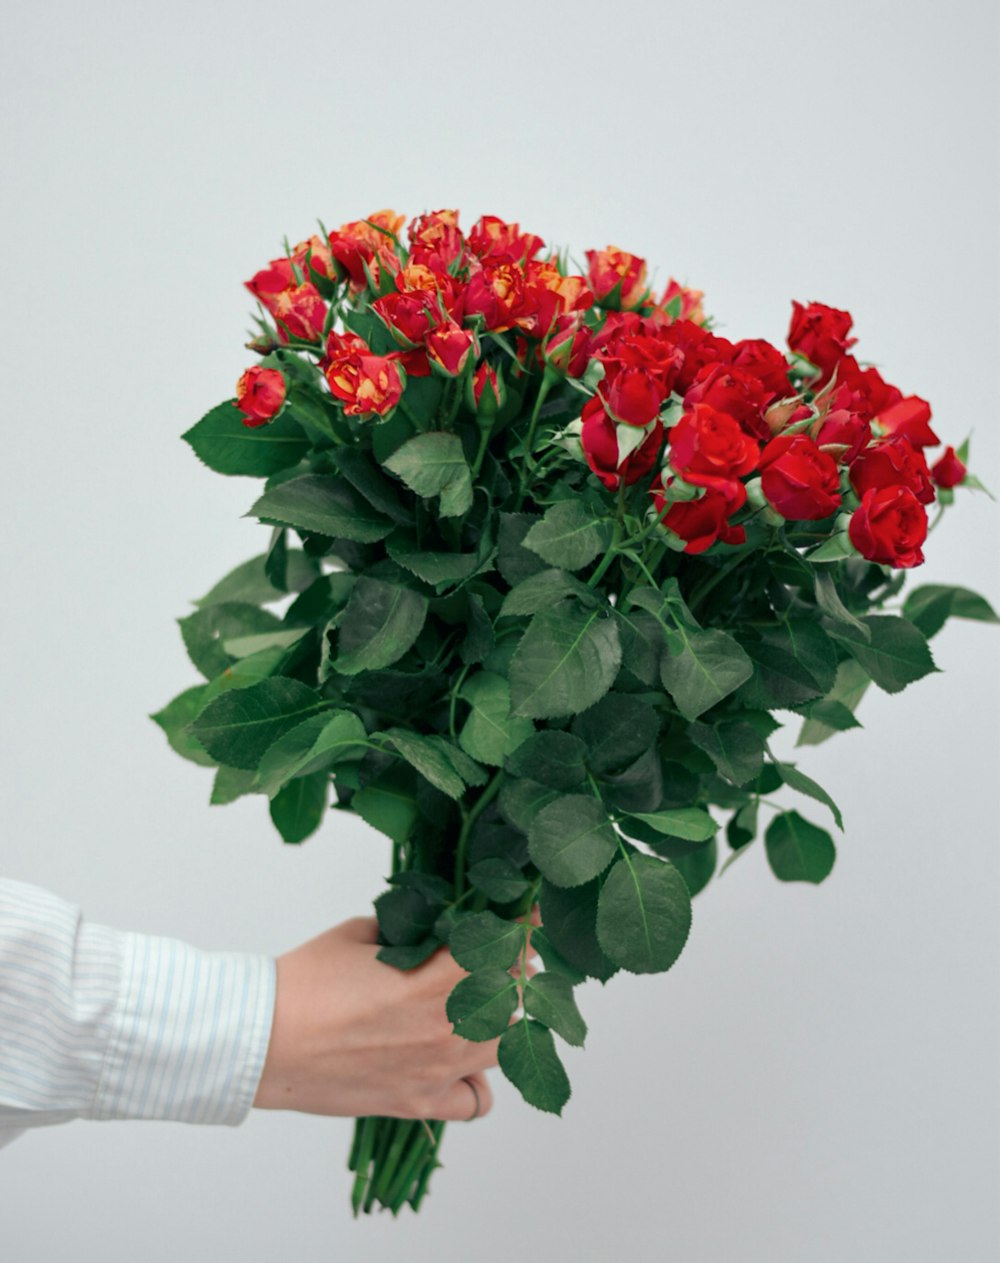 Foto zum Thema Rote Rosen Strauß an der Hand – Kostenloses Bild zu Pflanze  auf Unsplash